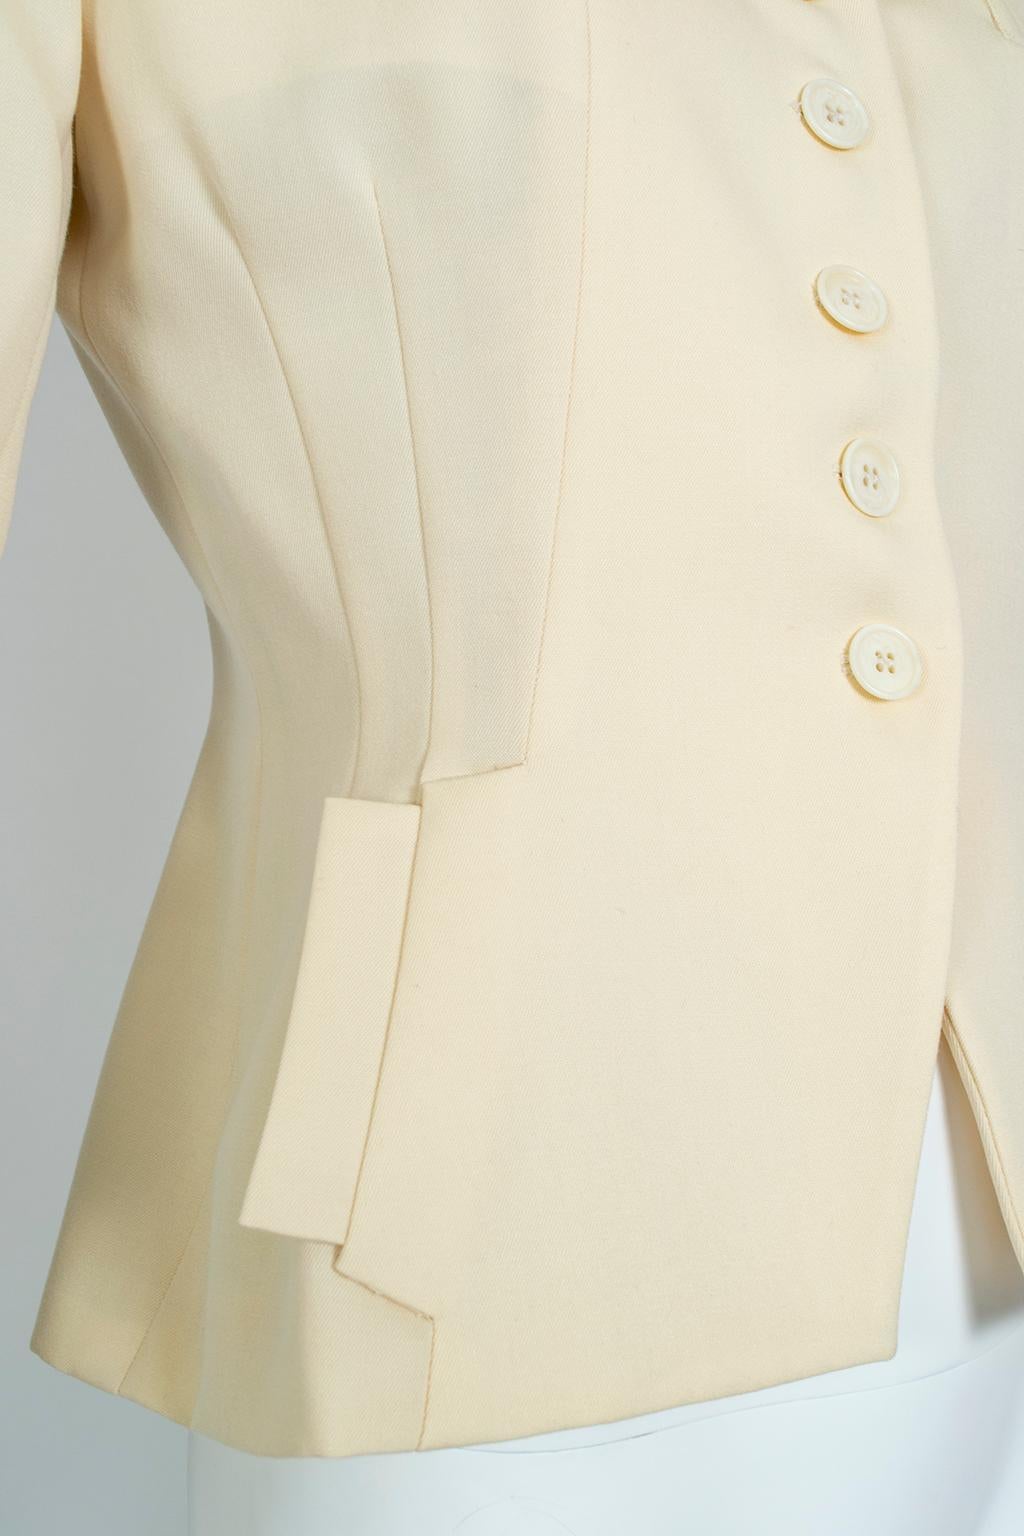 Women's Norma Kamali Ivory Wool Dioresque Sculpted Bar Jacket Peplum Blazer - XS, 1980s